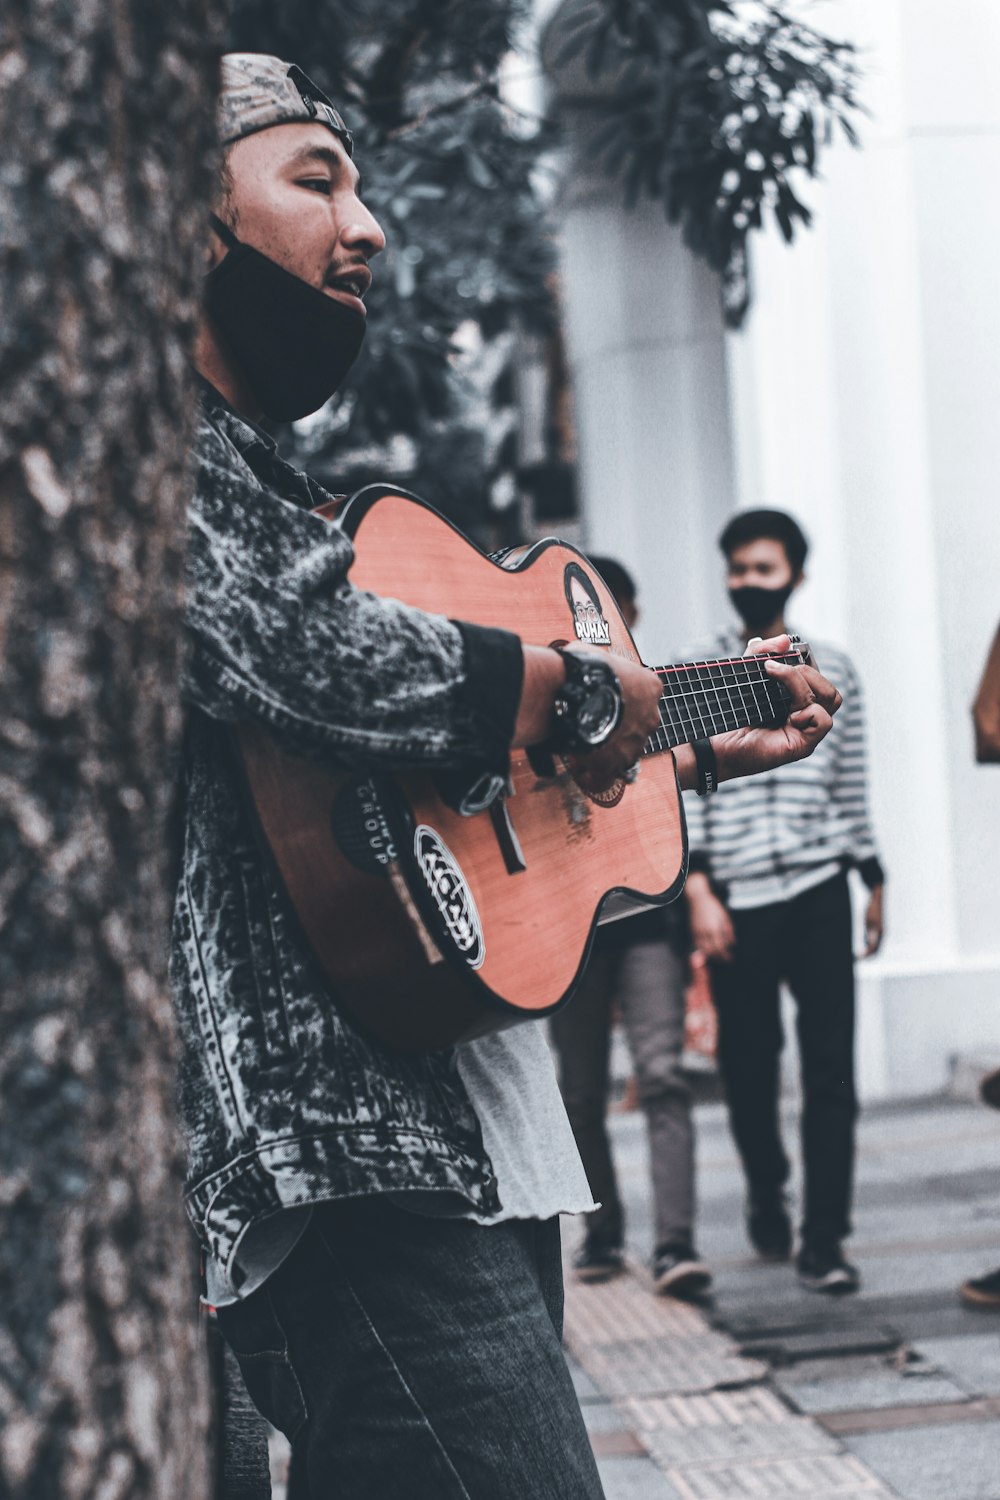 Mann im schwarz-weißen Mantel spielt braune Akustikgitarre